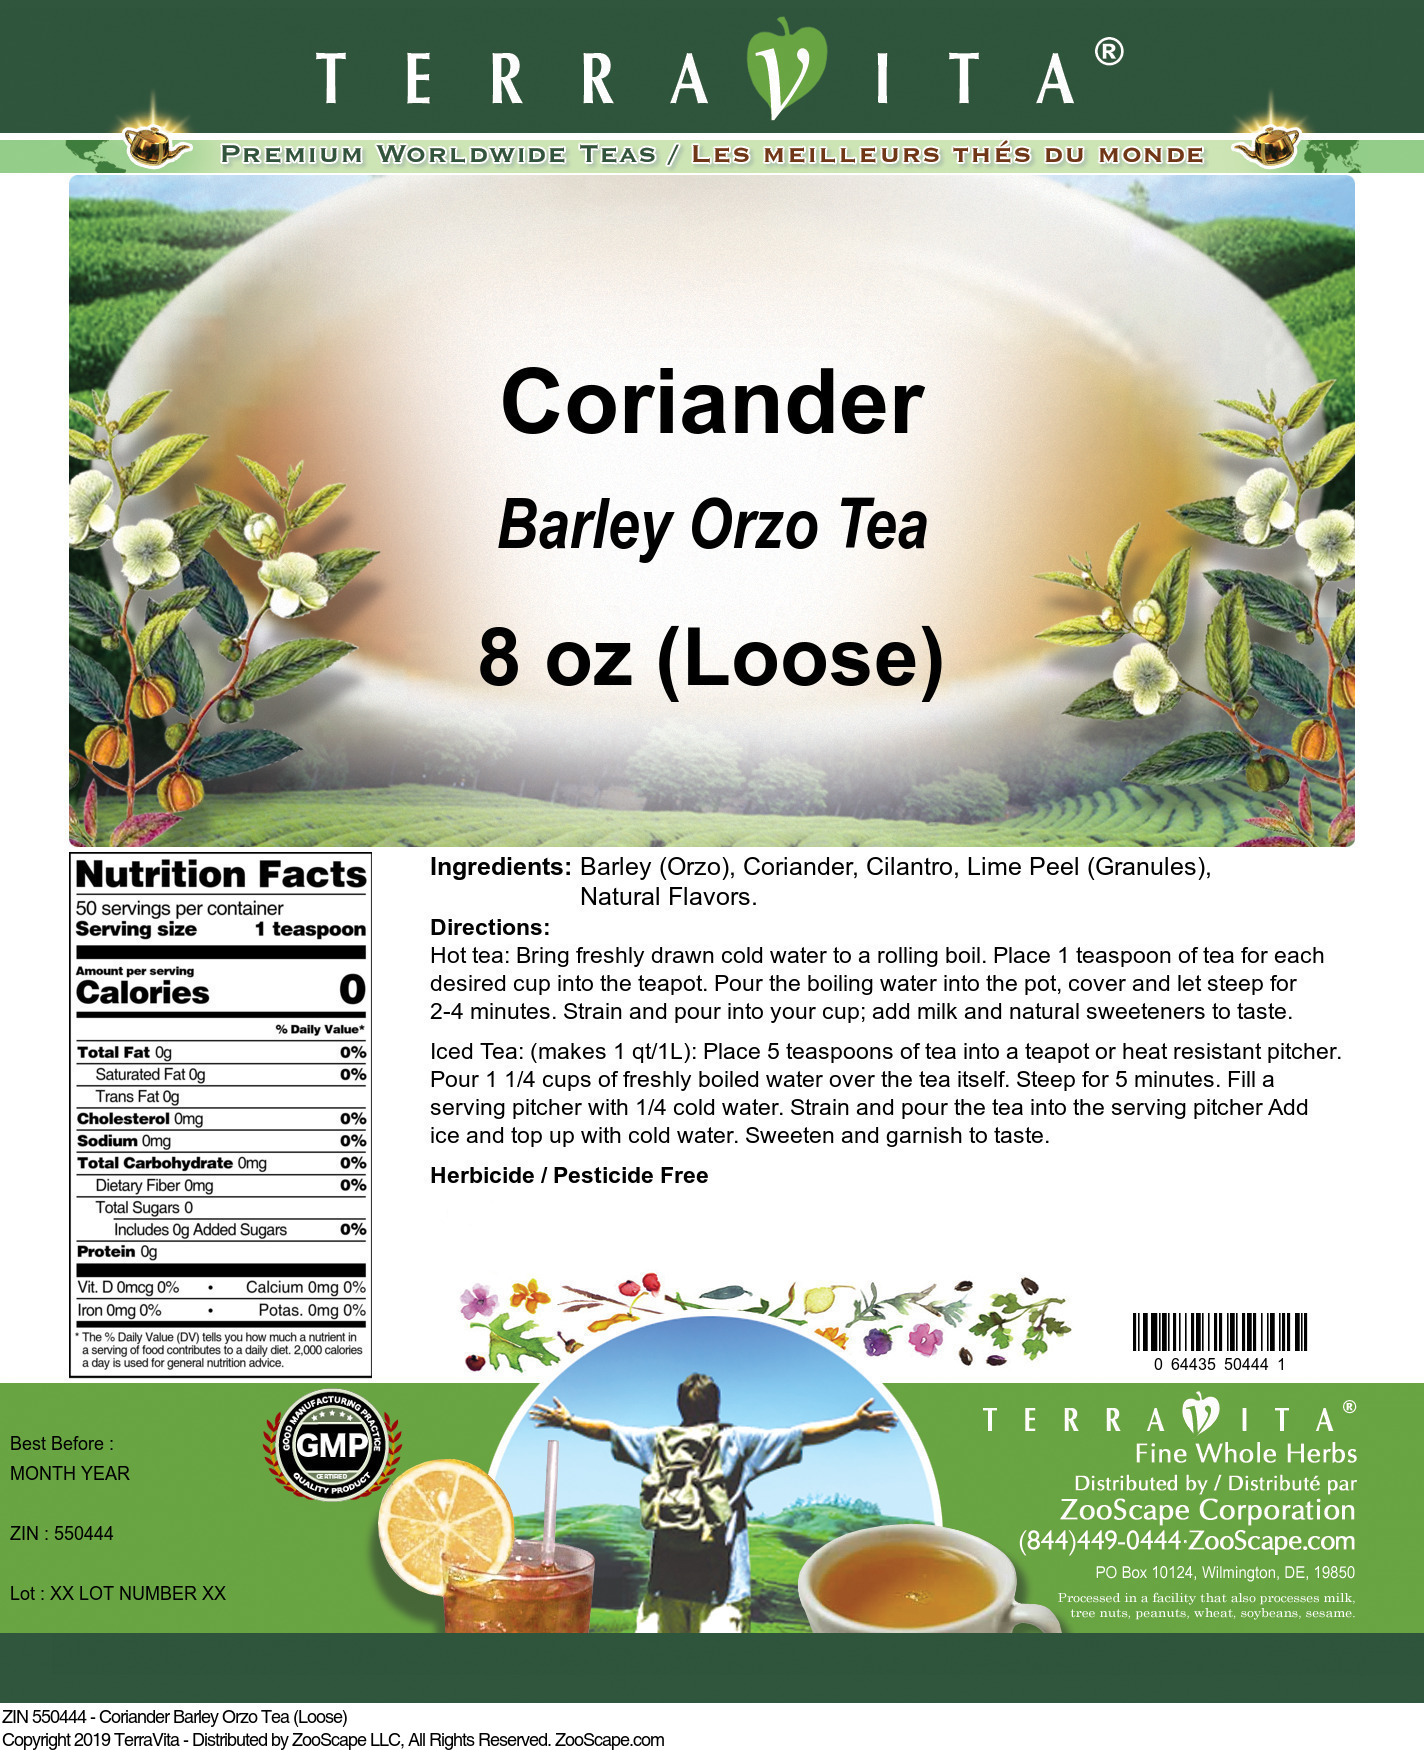 Coriander Barley Orzo Tea (Loose) - Label